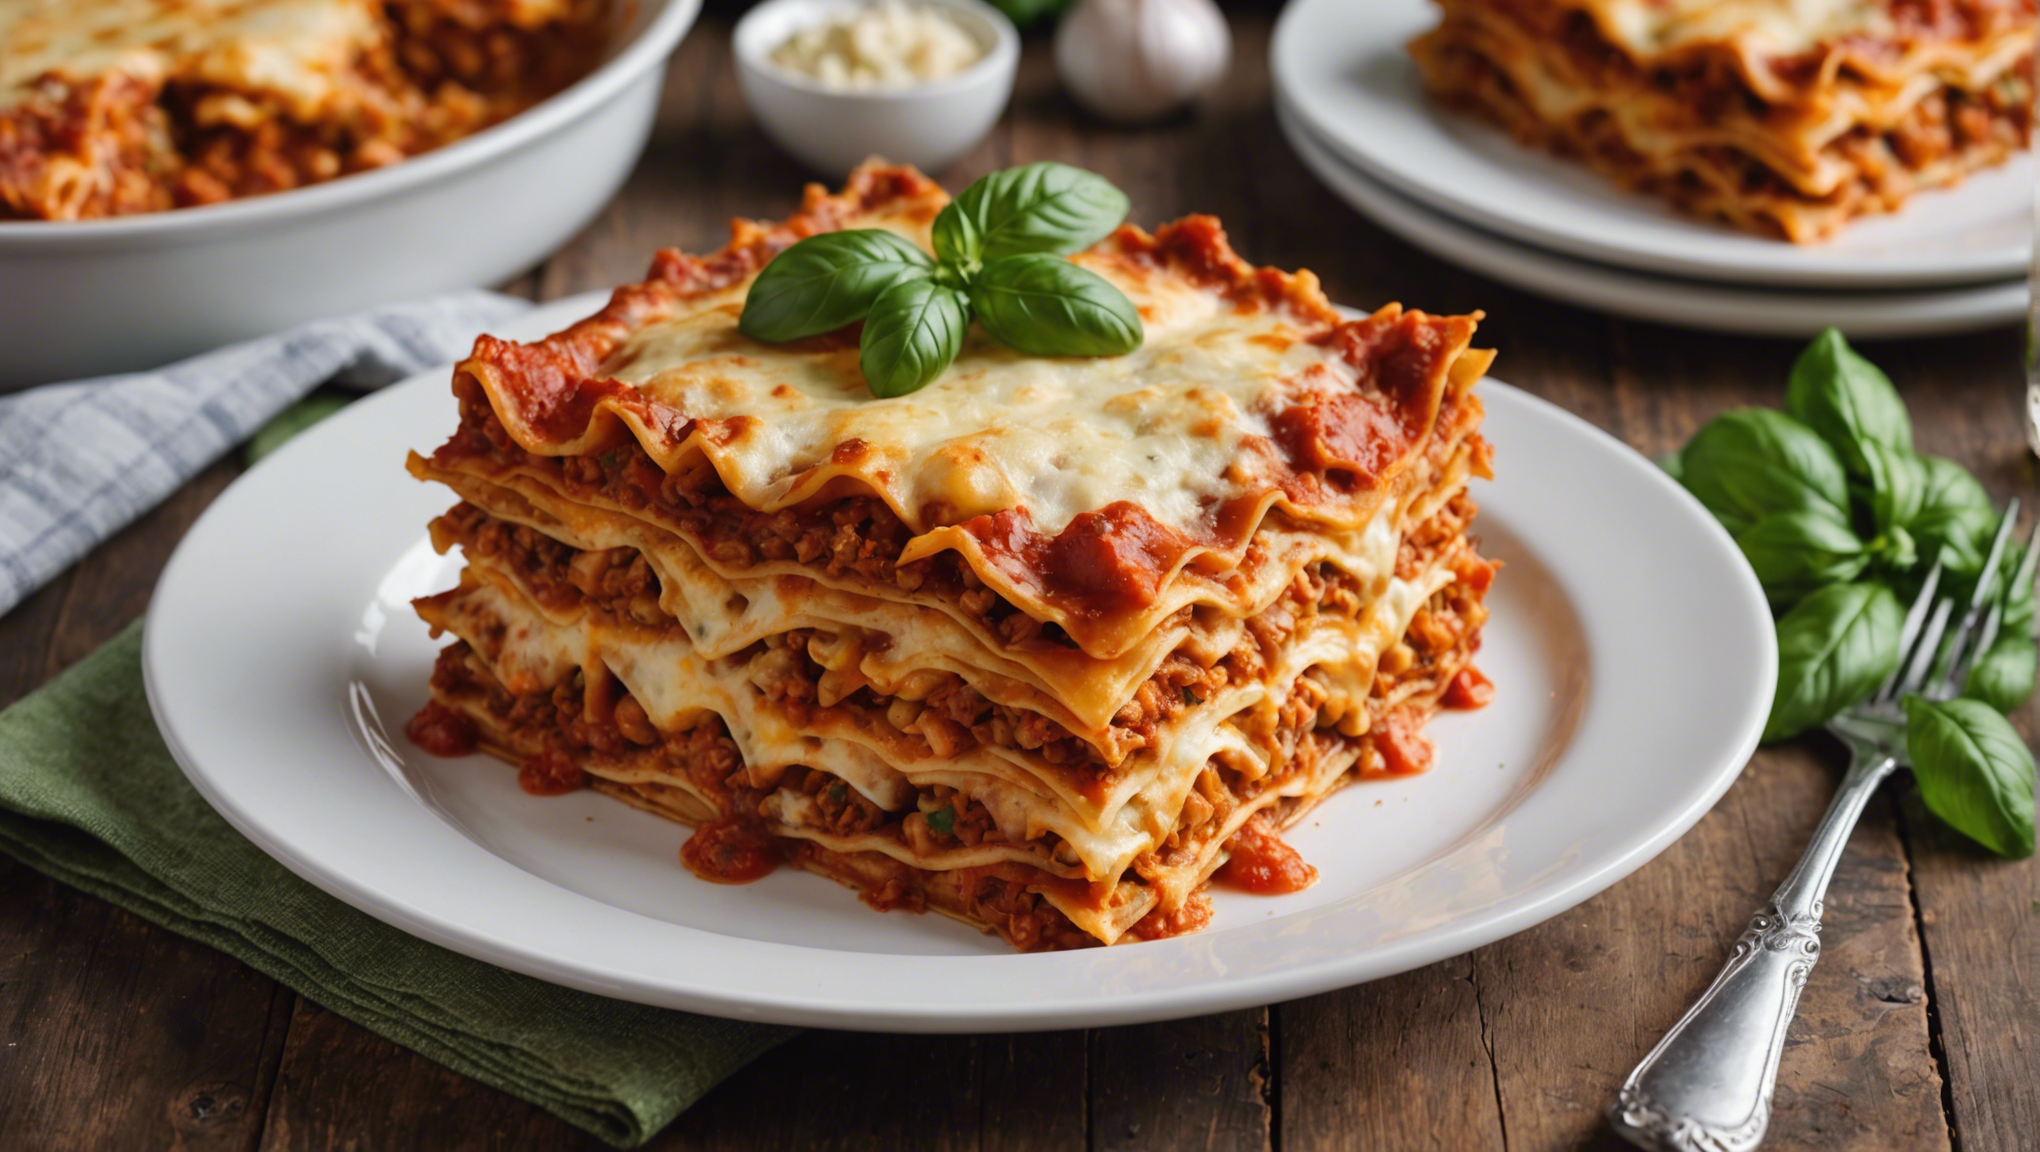 découvrez les ingrédients clés pour concocter les meilleures lasagnes végétariennes riches en saveurs avec notre recette de lasagnes végétariennes incontournable.